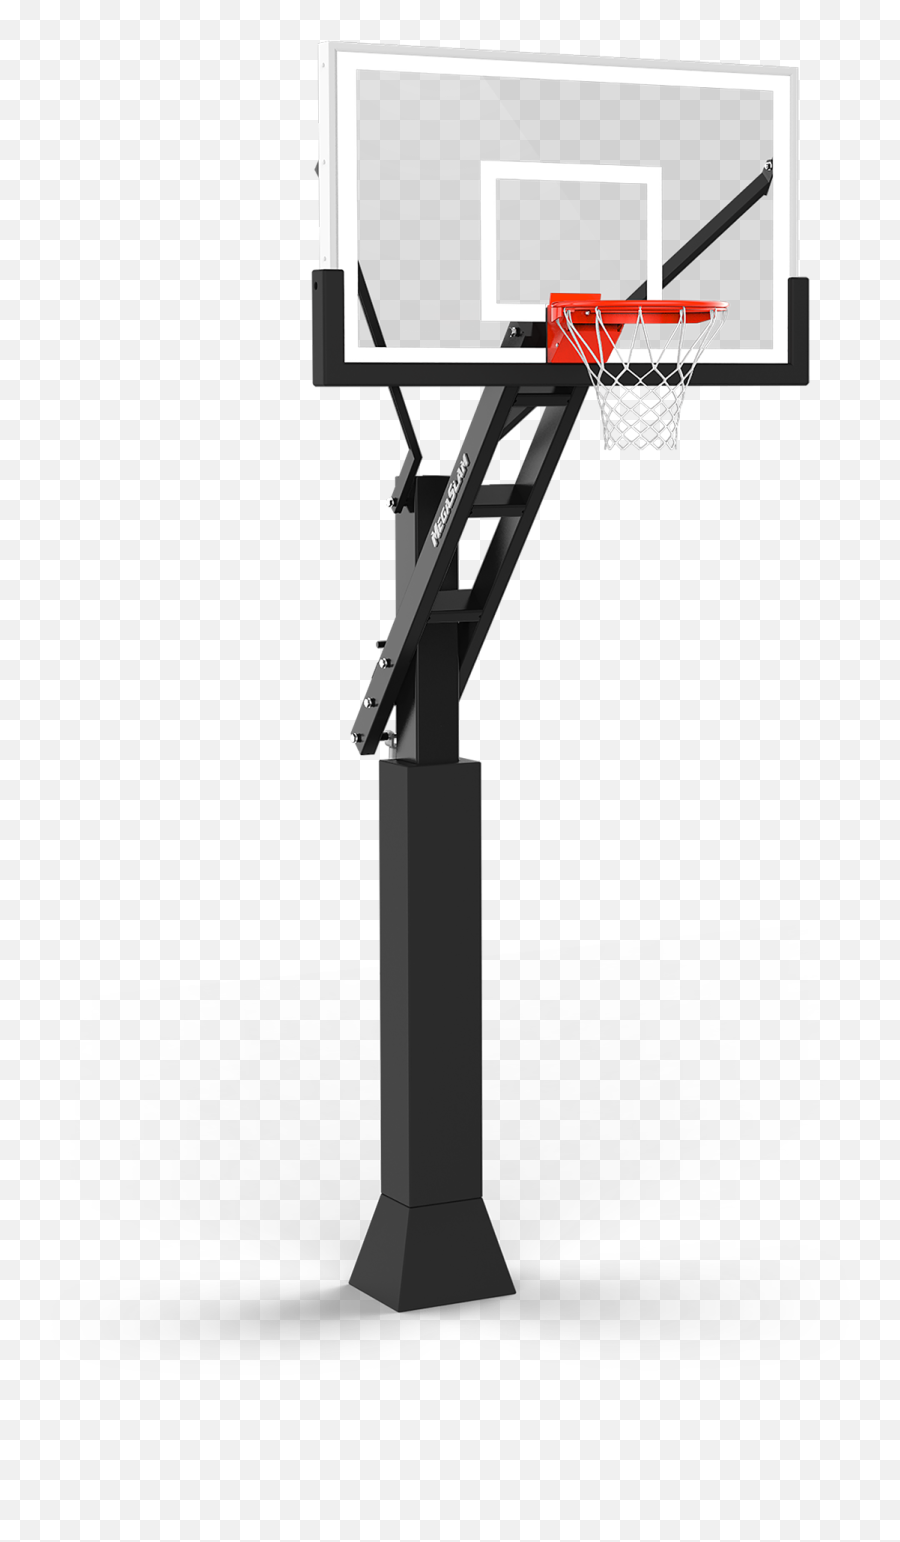 Megaslam 60 Adjustable Basketball Hoop - Mega Slam Basketball Hoop Emoji,Basketball Hoop Png